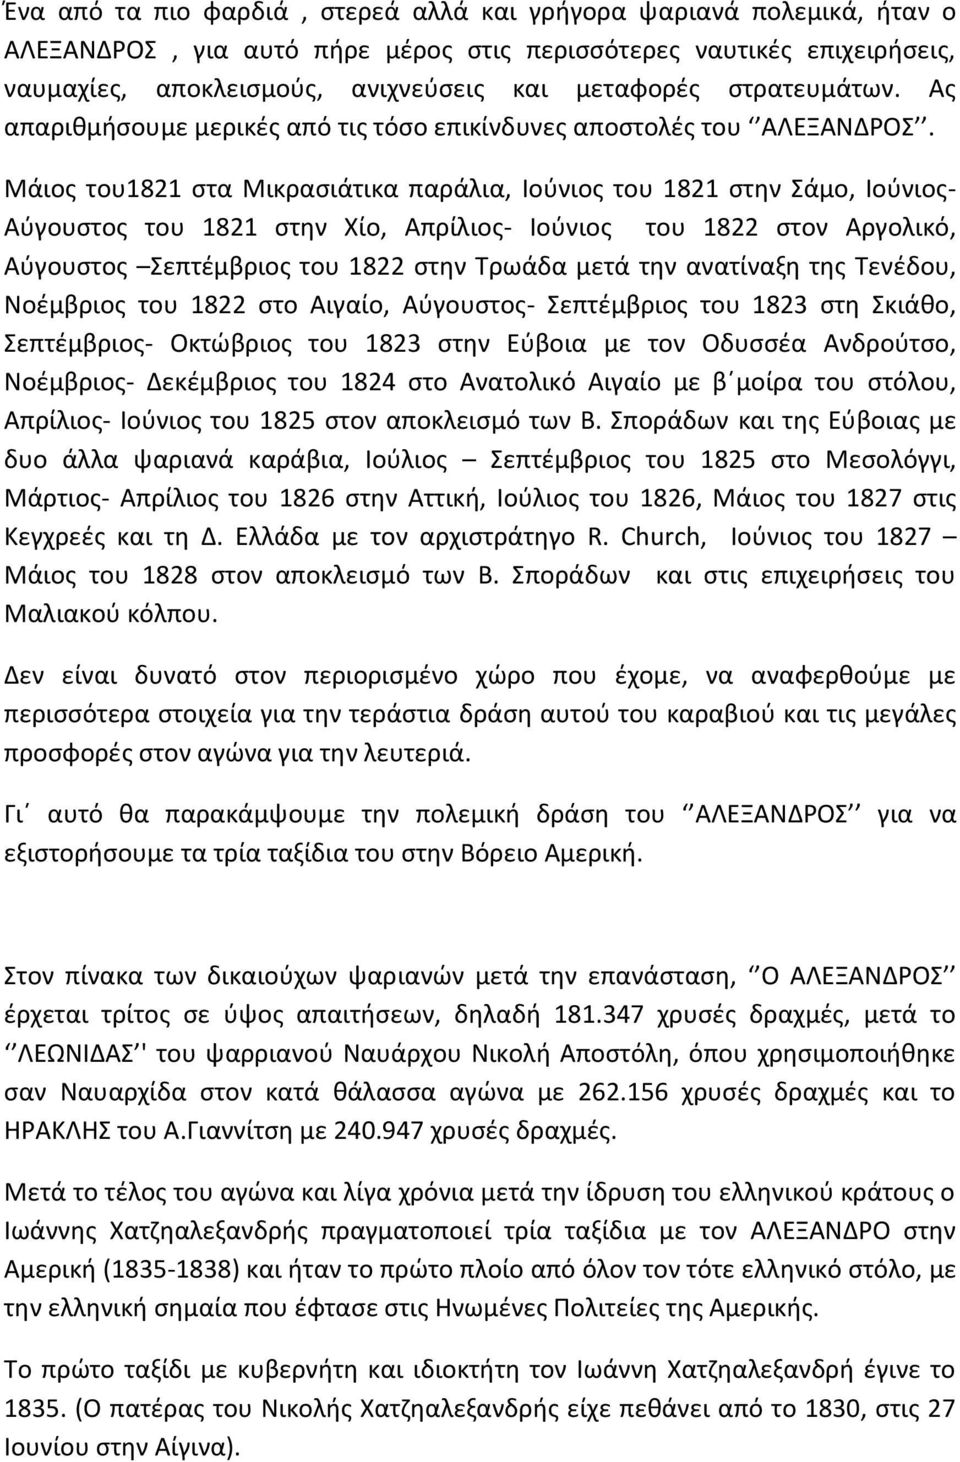 Μάιος του1821 στα Μικρασιάτικα παράλια, Ιούνιος του 1821 στην Σάμο, Ιούνιος- Αύγουστος του 1821 στην Χίο, Απρίλιος- Ιούνιος του 1822 στον Αργολικό, Αύγουστος Σεπτέμβριος του 1822 στην Τρωάδα μετά την